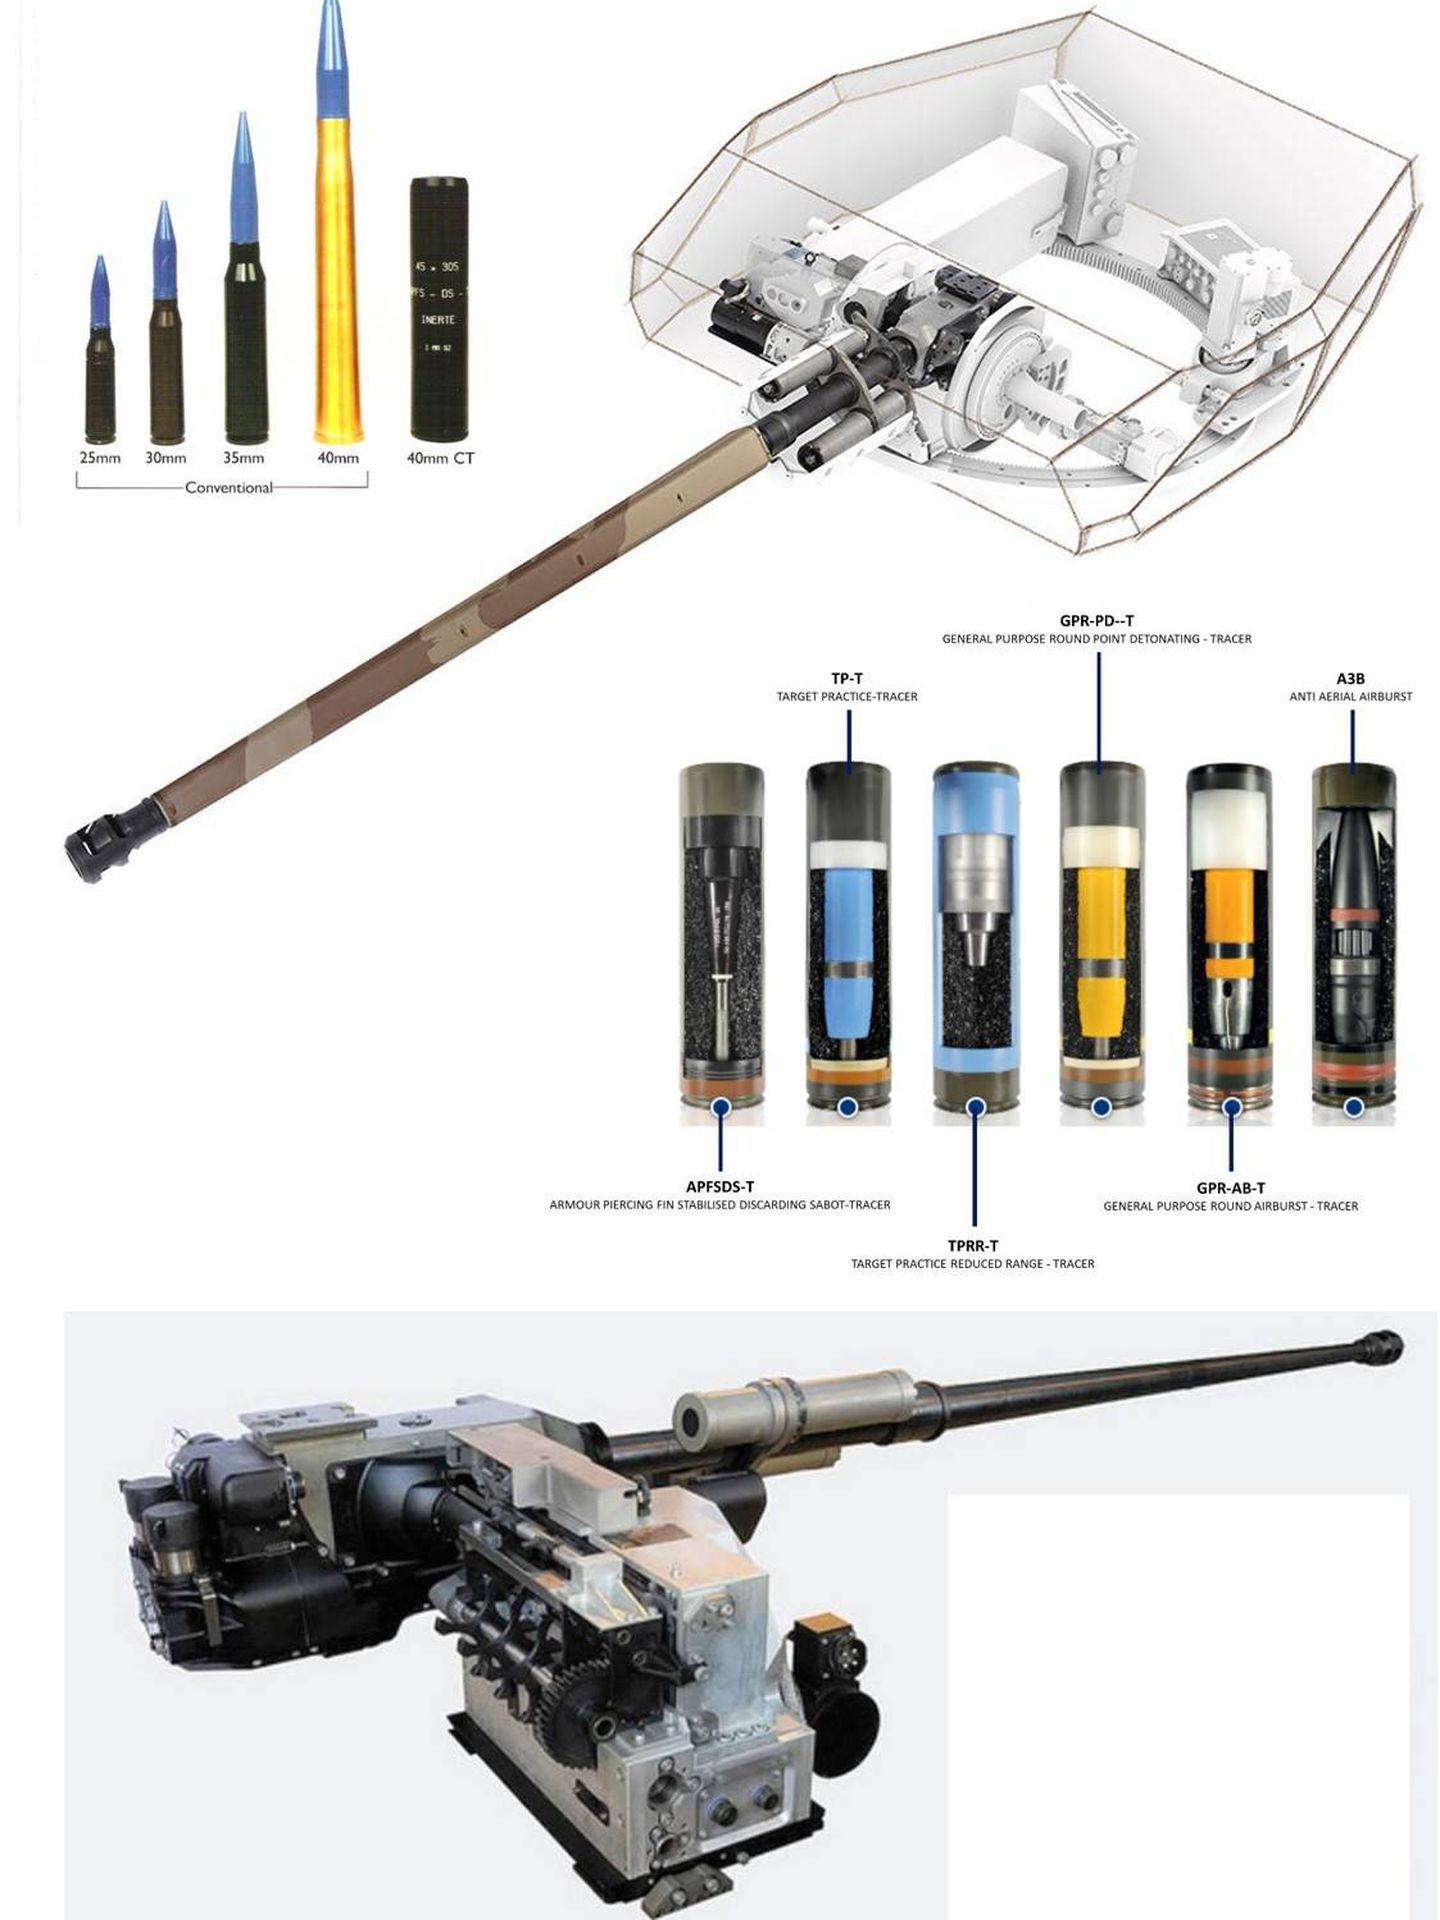 El cañón y munición del CT40. se aprecia lo compacto del arma y el tamaño reducido de la munición. (NEXTER)